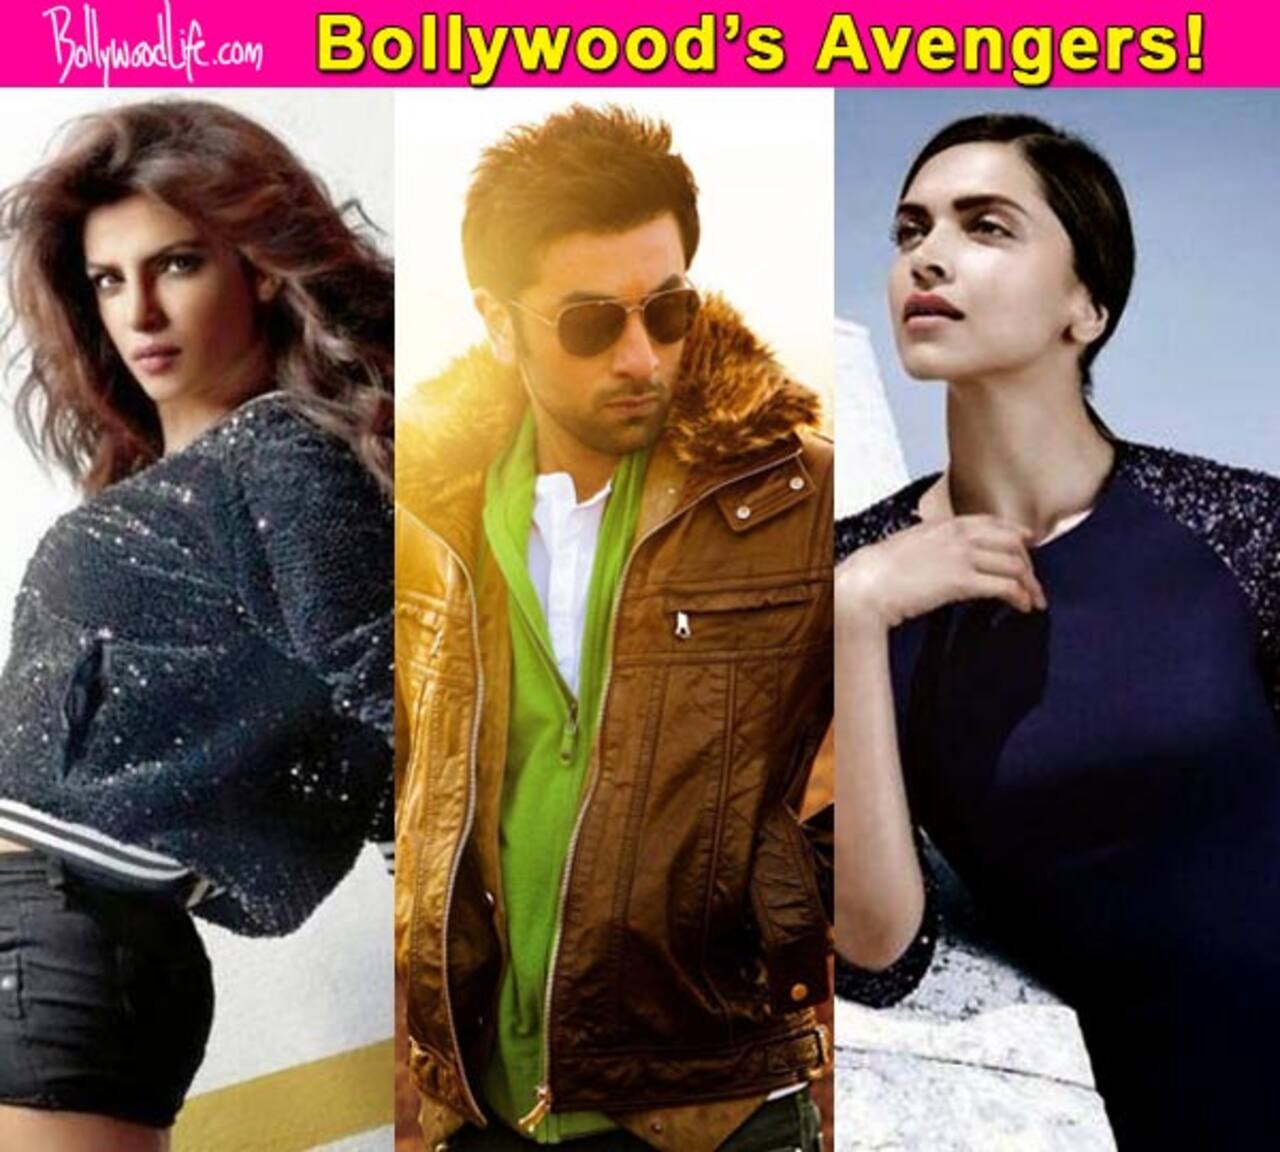 Priyanka Chopra, Ranbir Kapoor, Deepika Padukone: Stars and their superpowers if they were the Avengers!